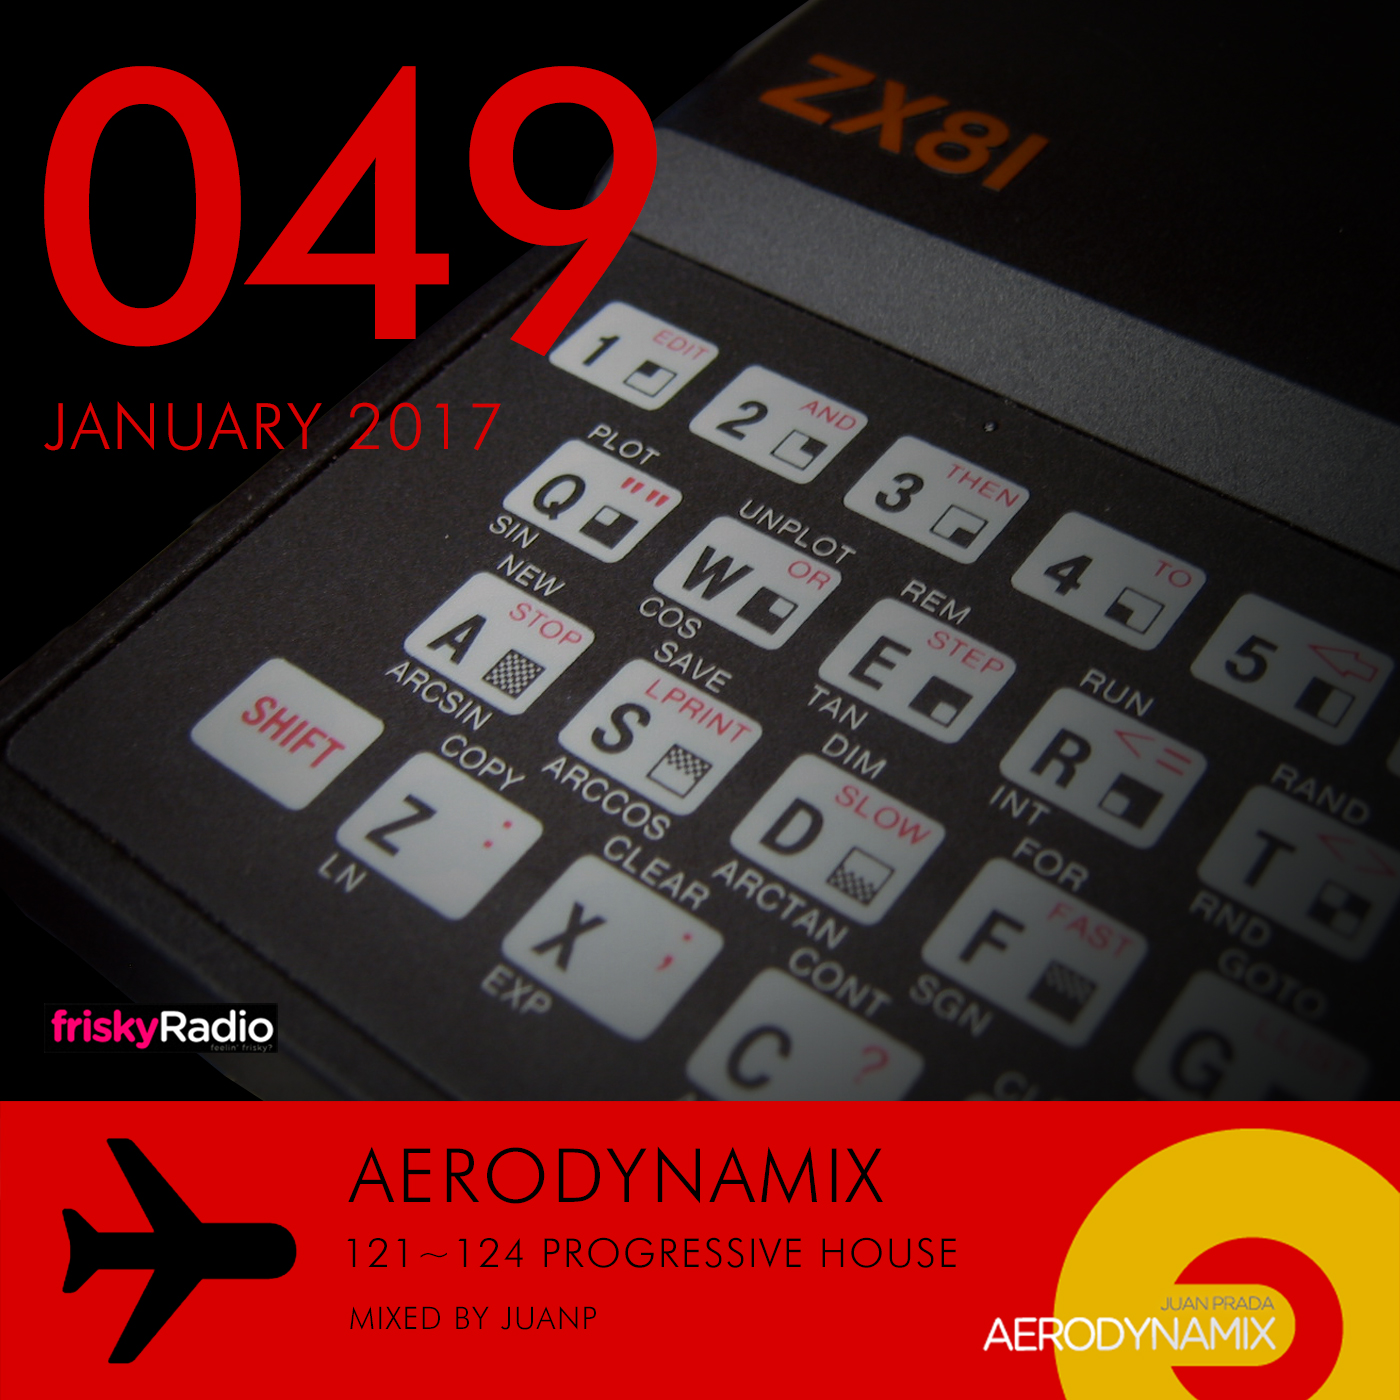 Aerodynamix 049 @ Frisky Radio January 2017 mixed by JuanP